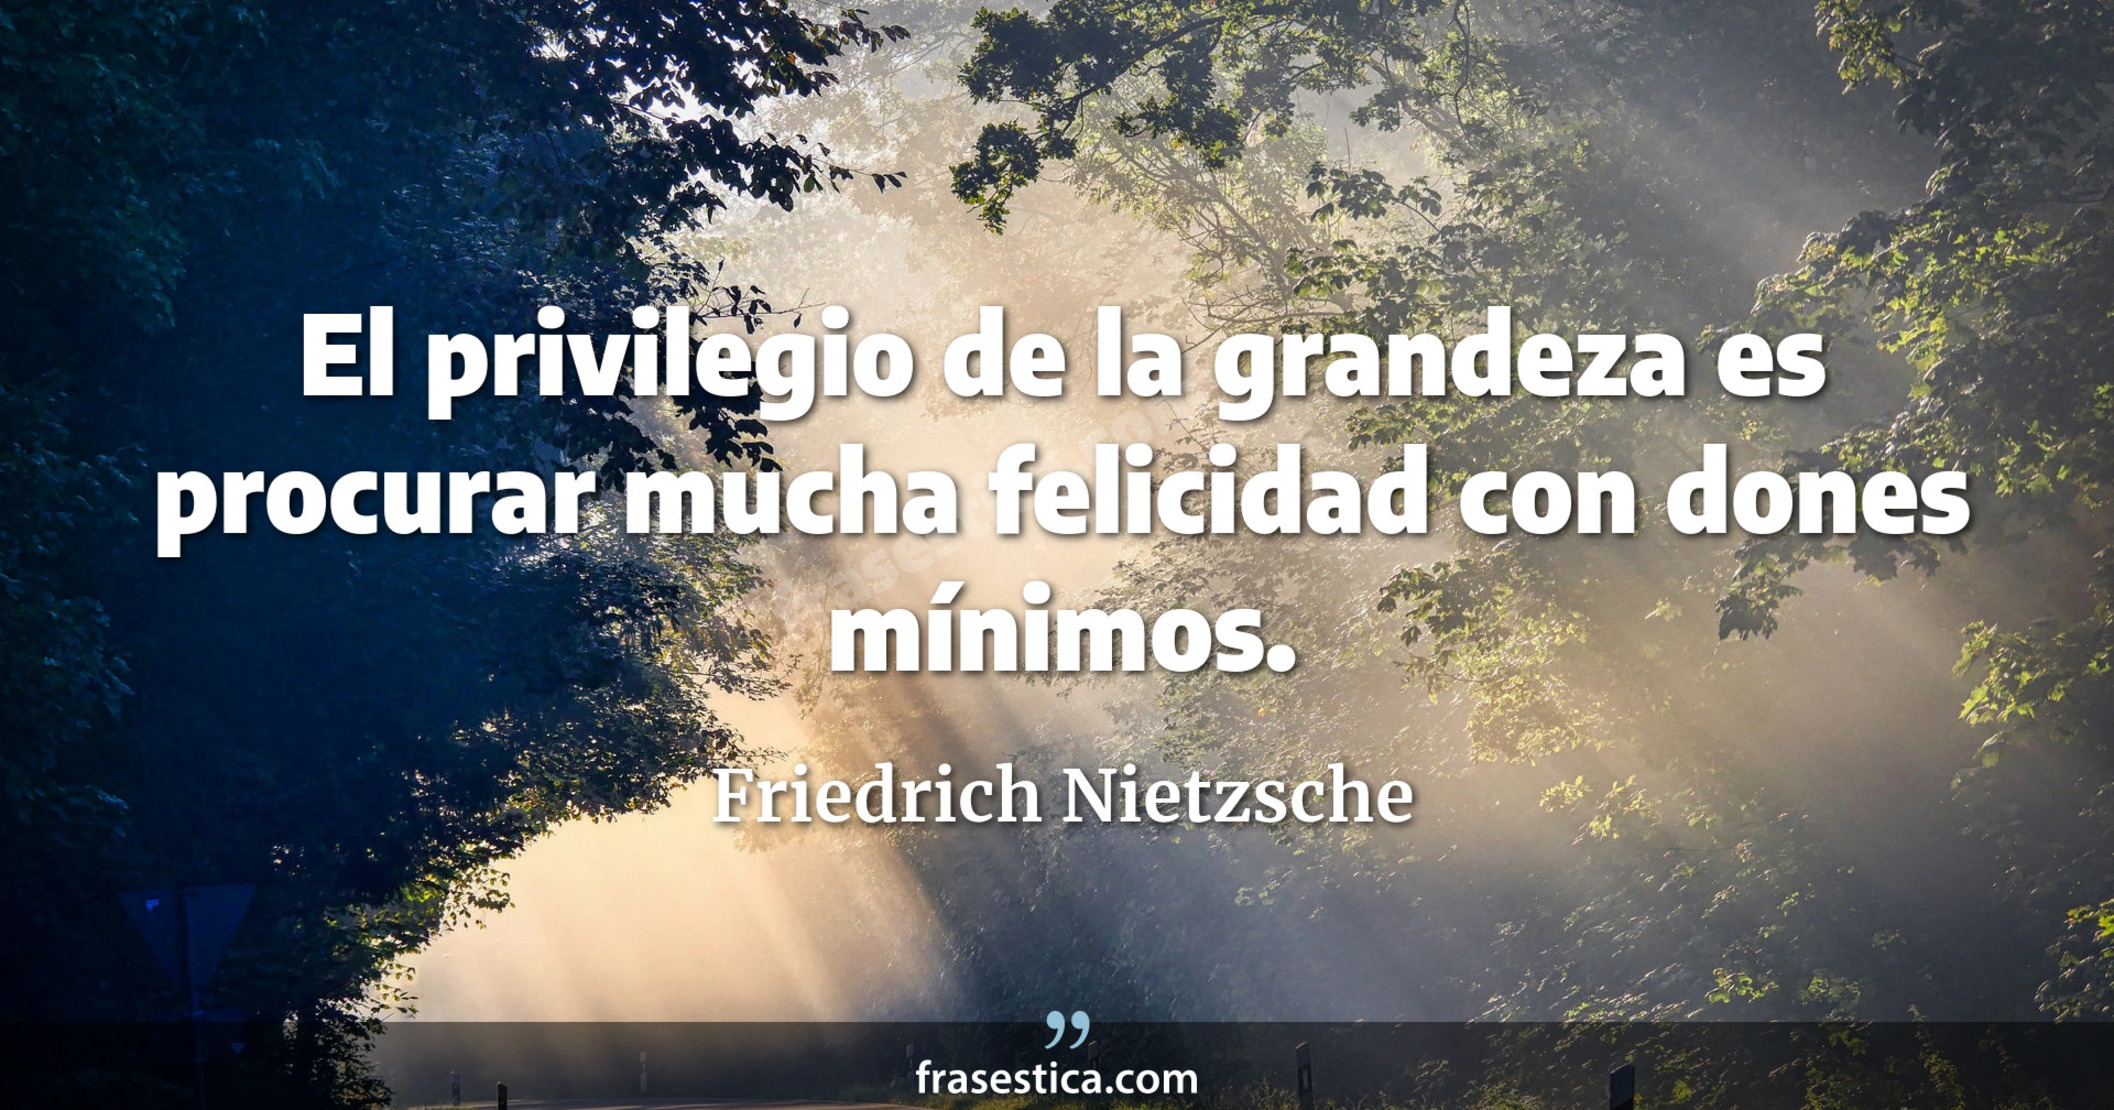 El privilegio de la grandeza es procurar mucha felicidad con dones mínimos. - Friedrich Nietzsche